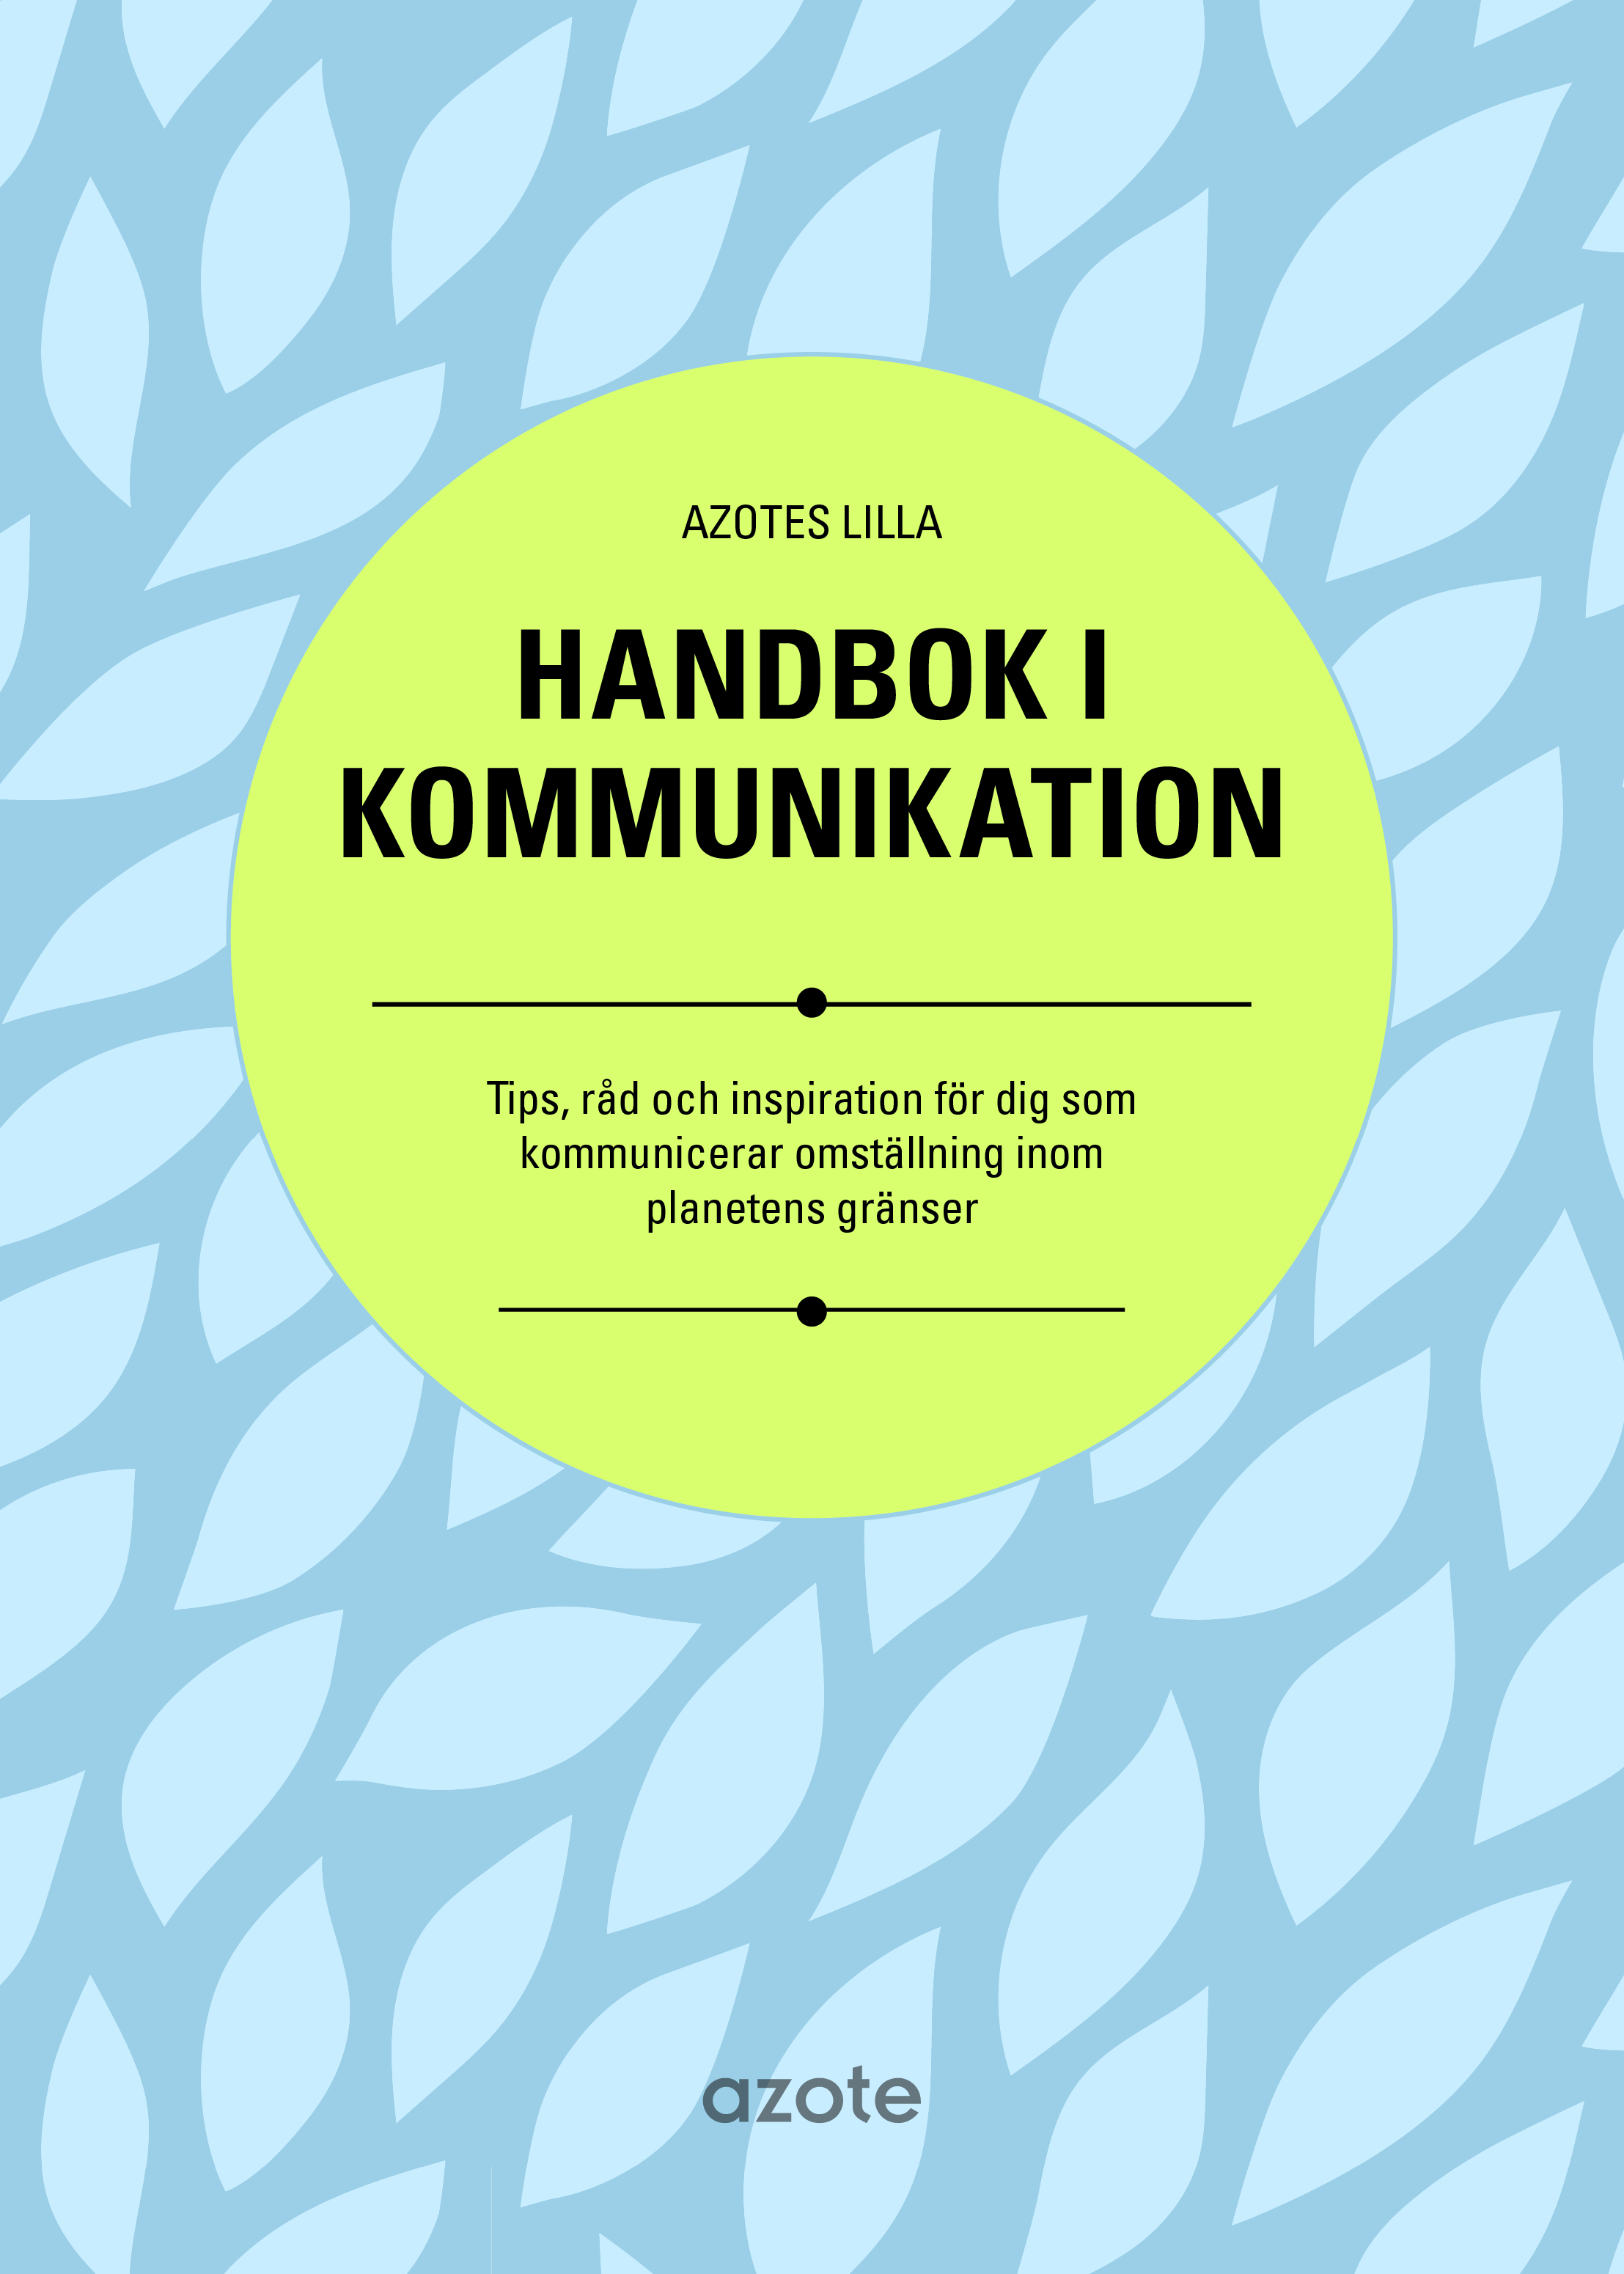 Beställ vår handbok i hållbar kommunikation